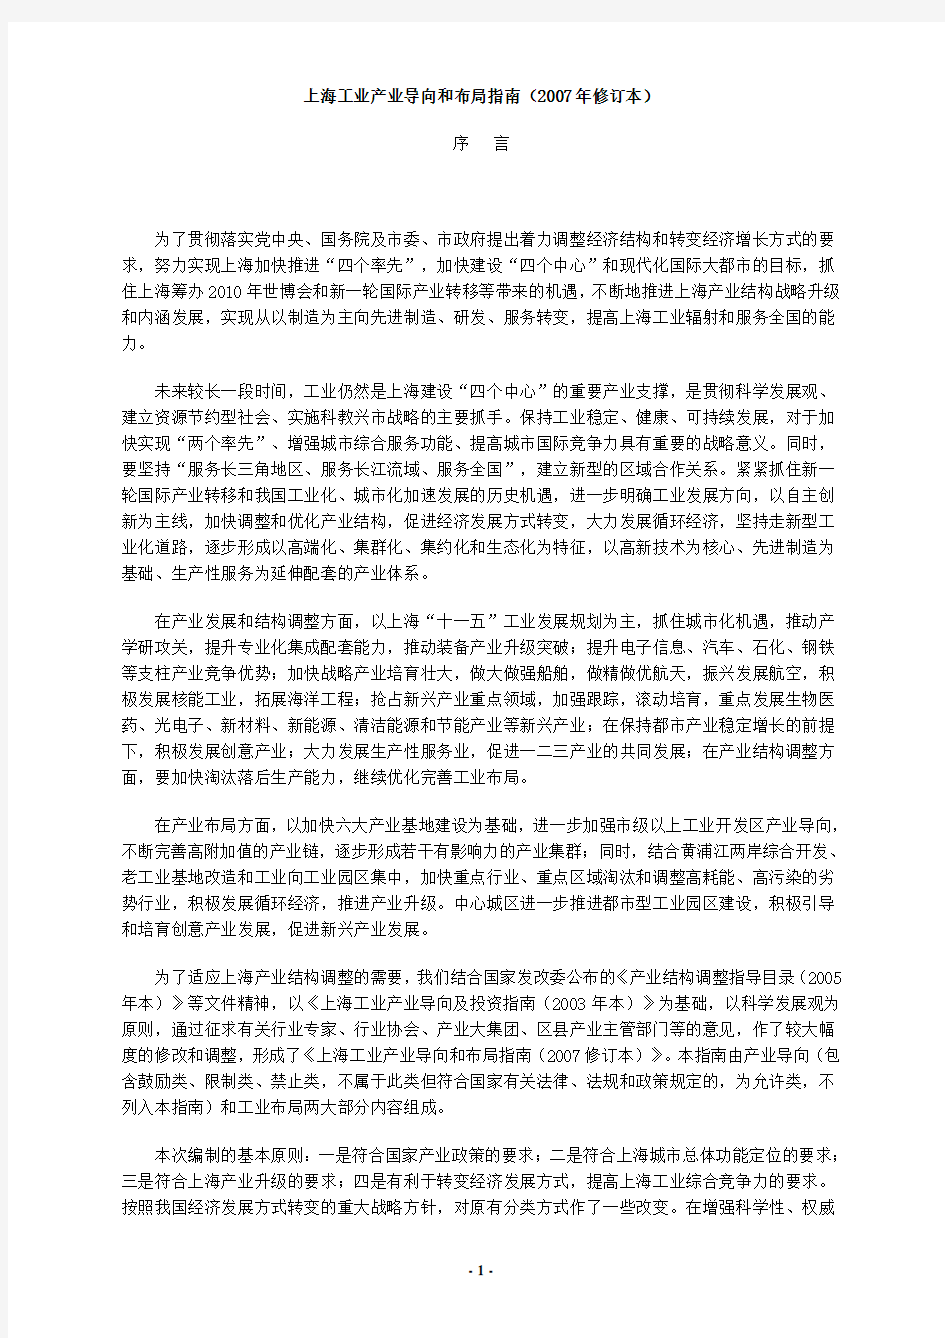 上海工业产业导向和布局指南(2007 年修订本)